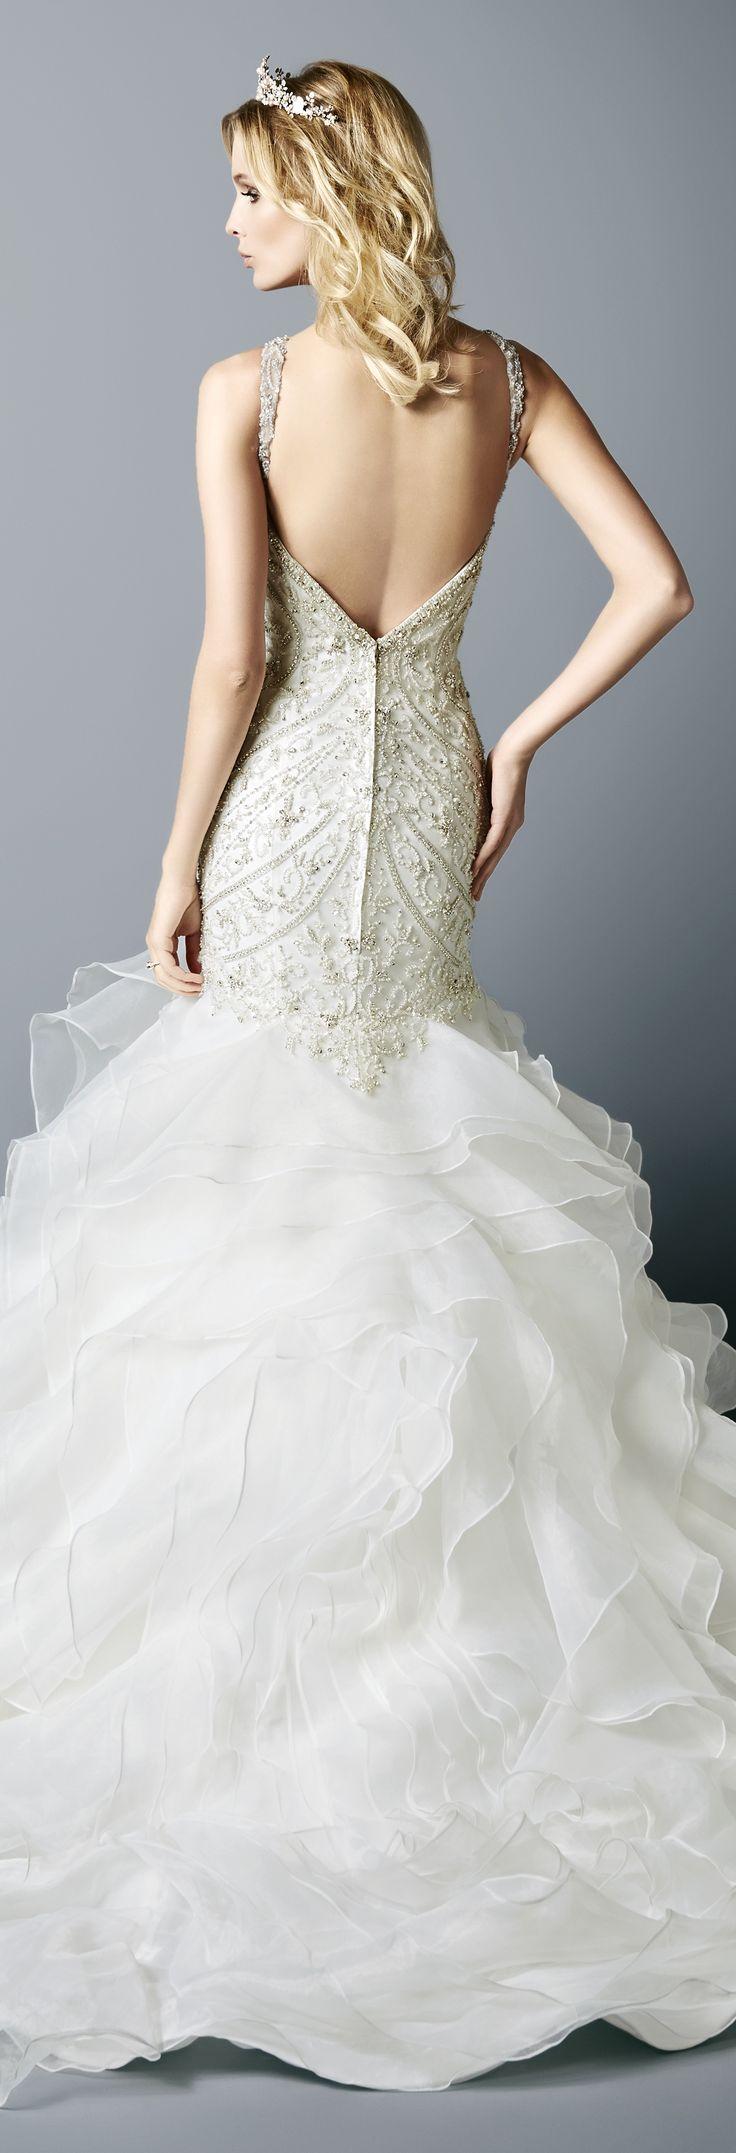 Wedding - High - Fashion Dress